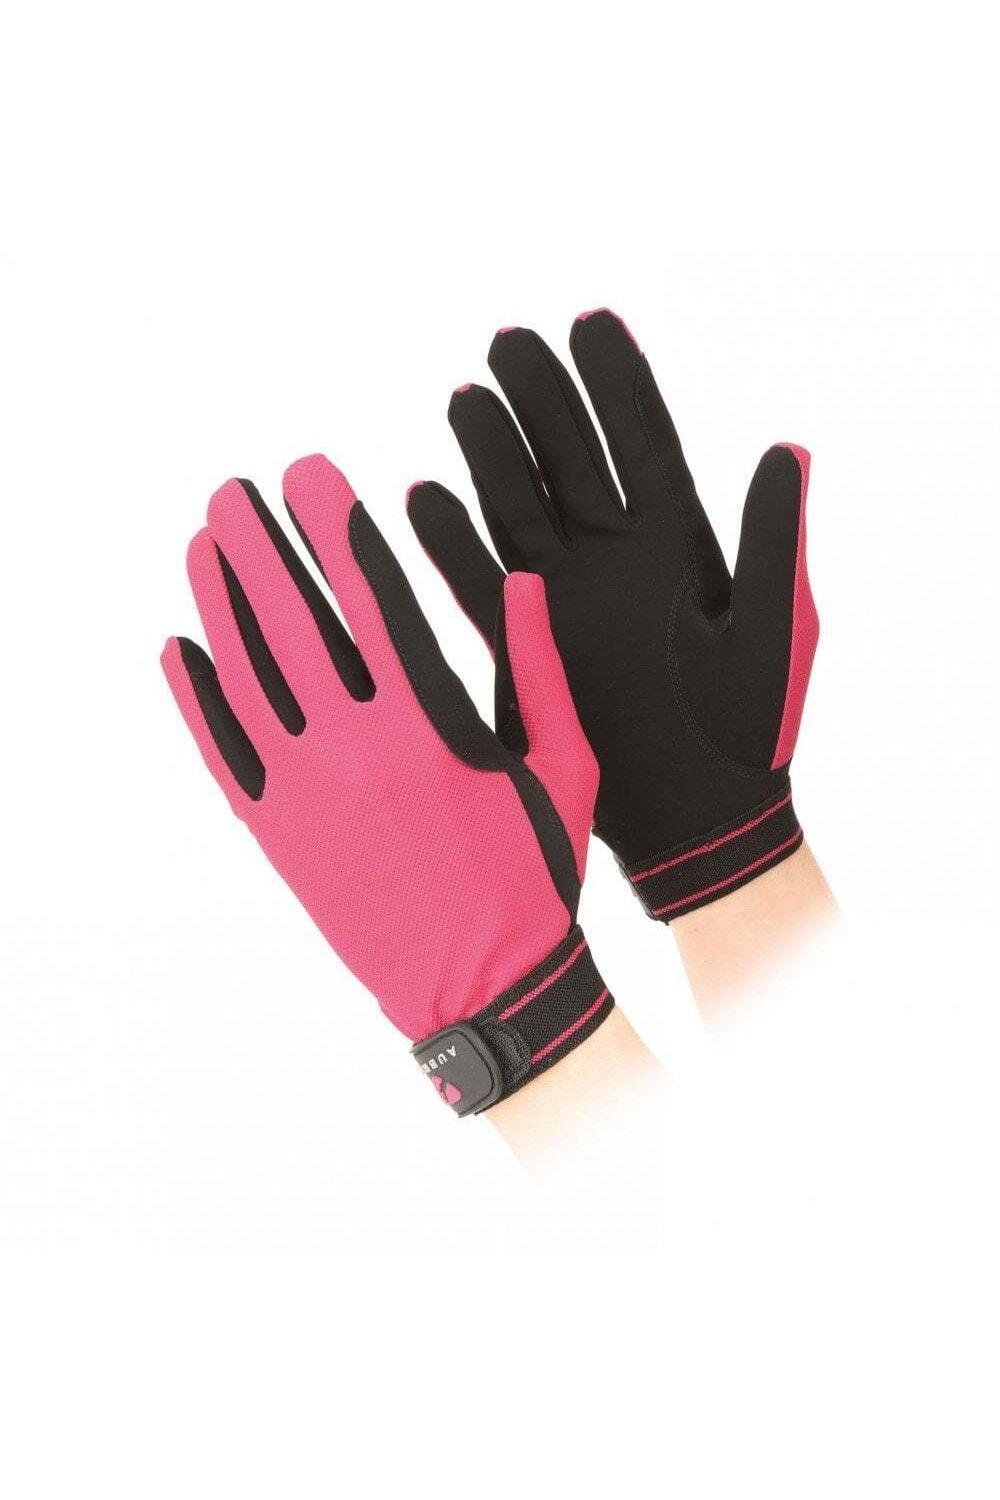 Сетчатые перчатки для верховой езды Aubrion, розовый